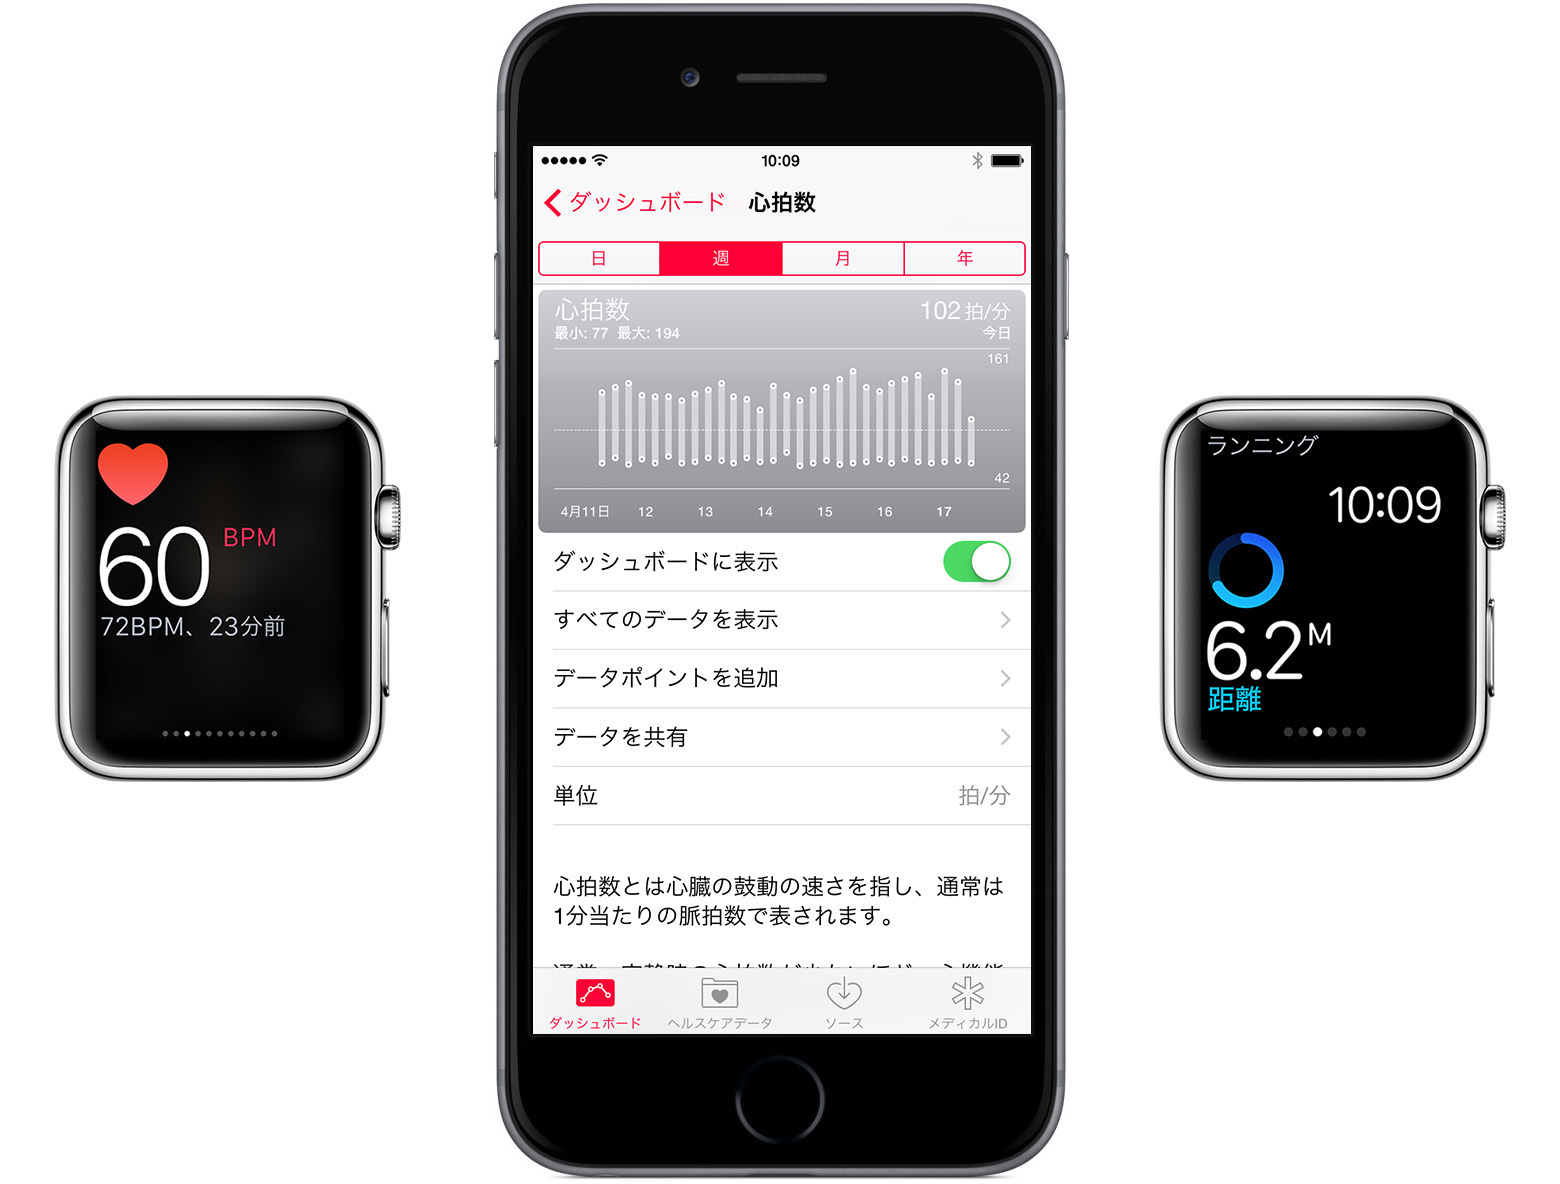 【UPDATE】｢Apple Watch｣、｢Watch OS 1.0.1｣の適用後に10分おきの心拍数の測定をストップしていた事が判明